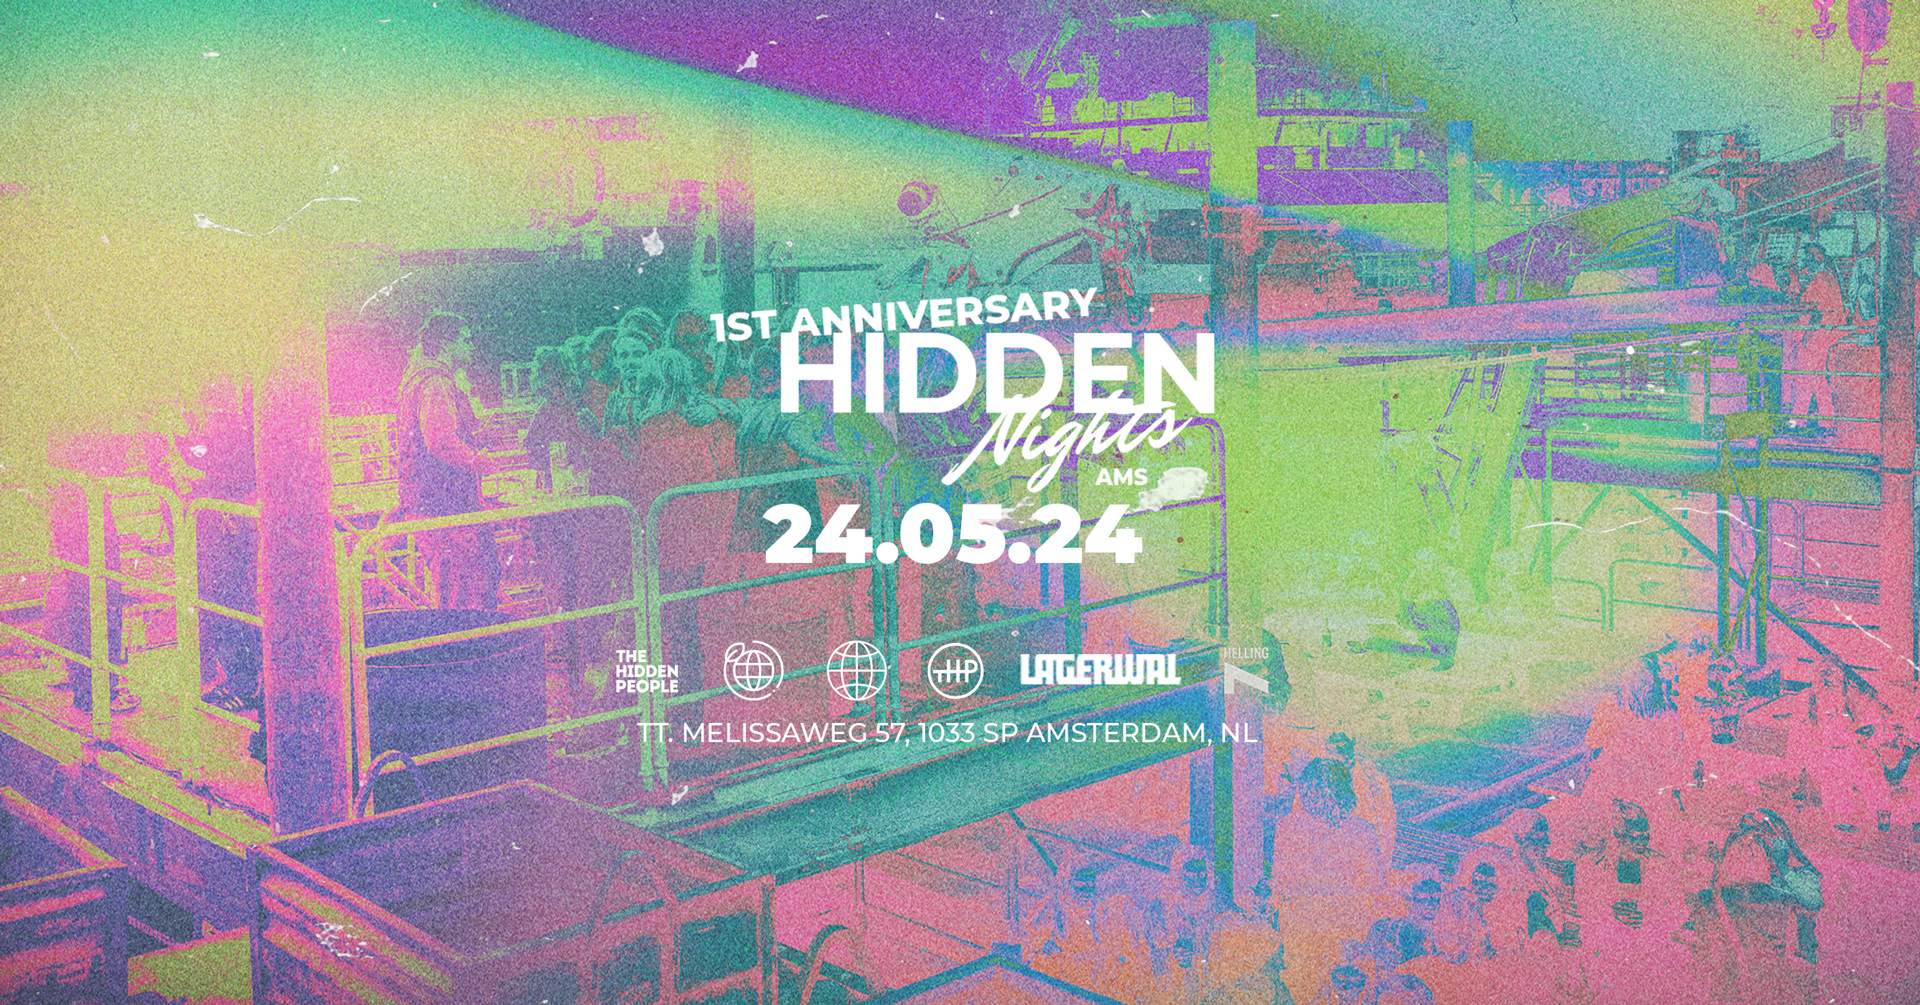 Hidden Nights 1st anniversary - Página trasera